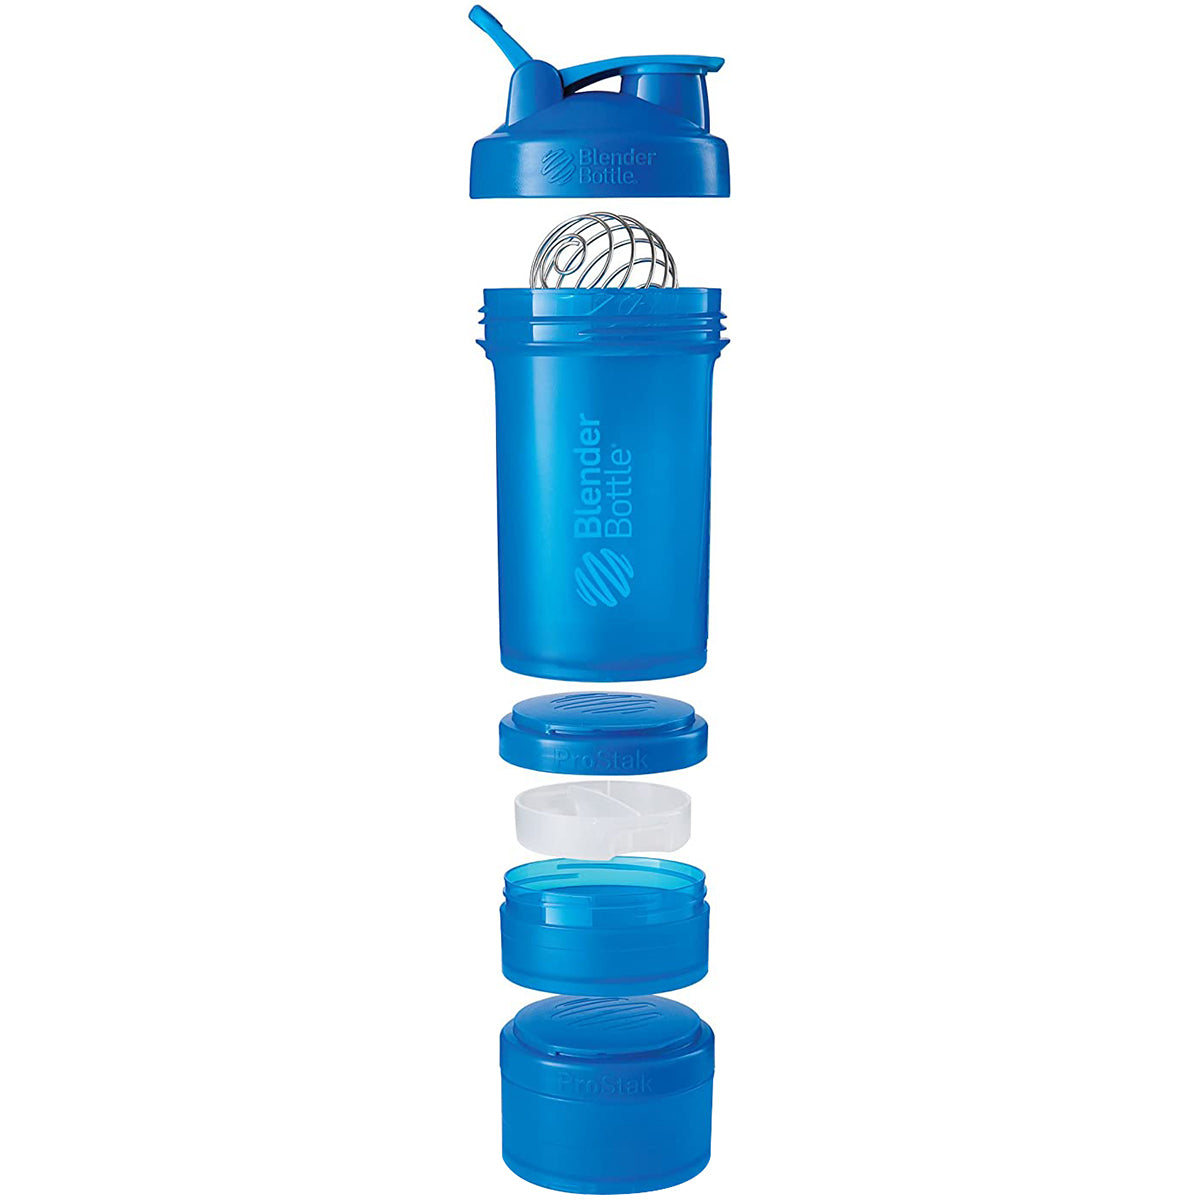 Blender Bottle ProStak System with 22 oz. Shaker Cup and Twist N' Lock Storage Blender Bottle